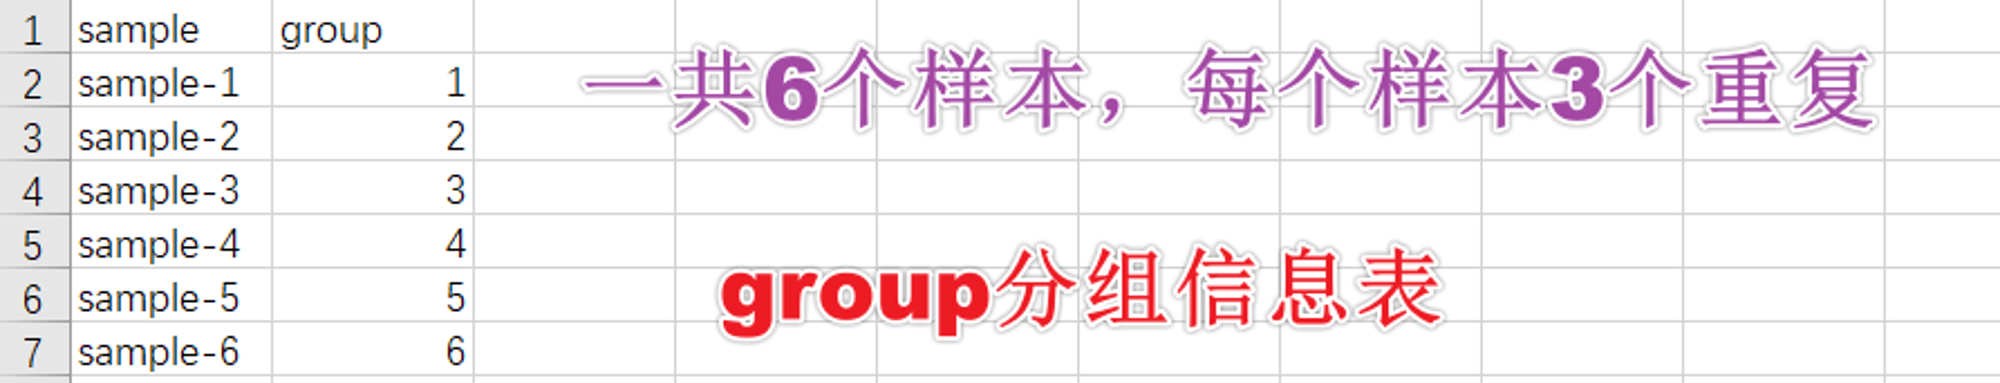 图1.1-2 group分组信息表